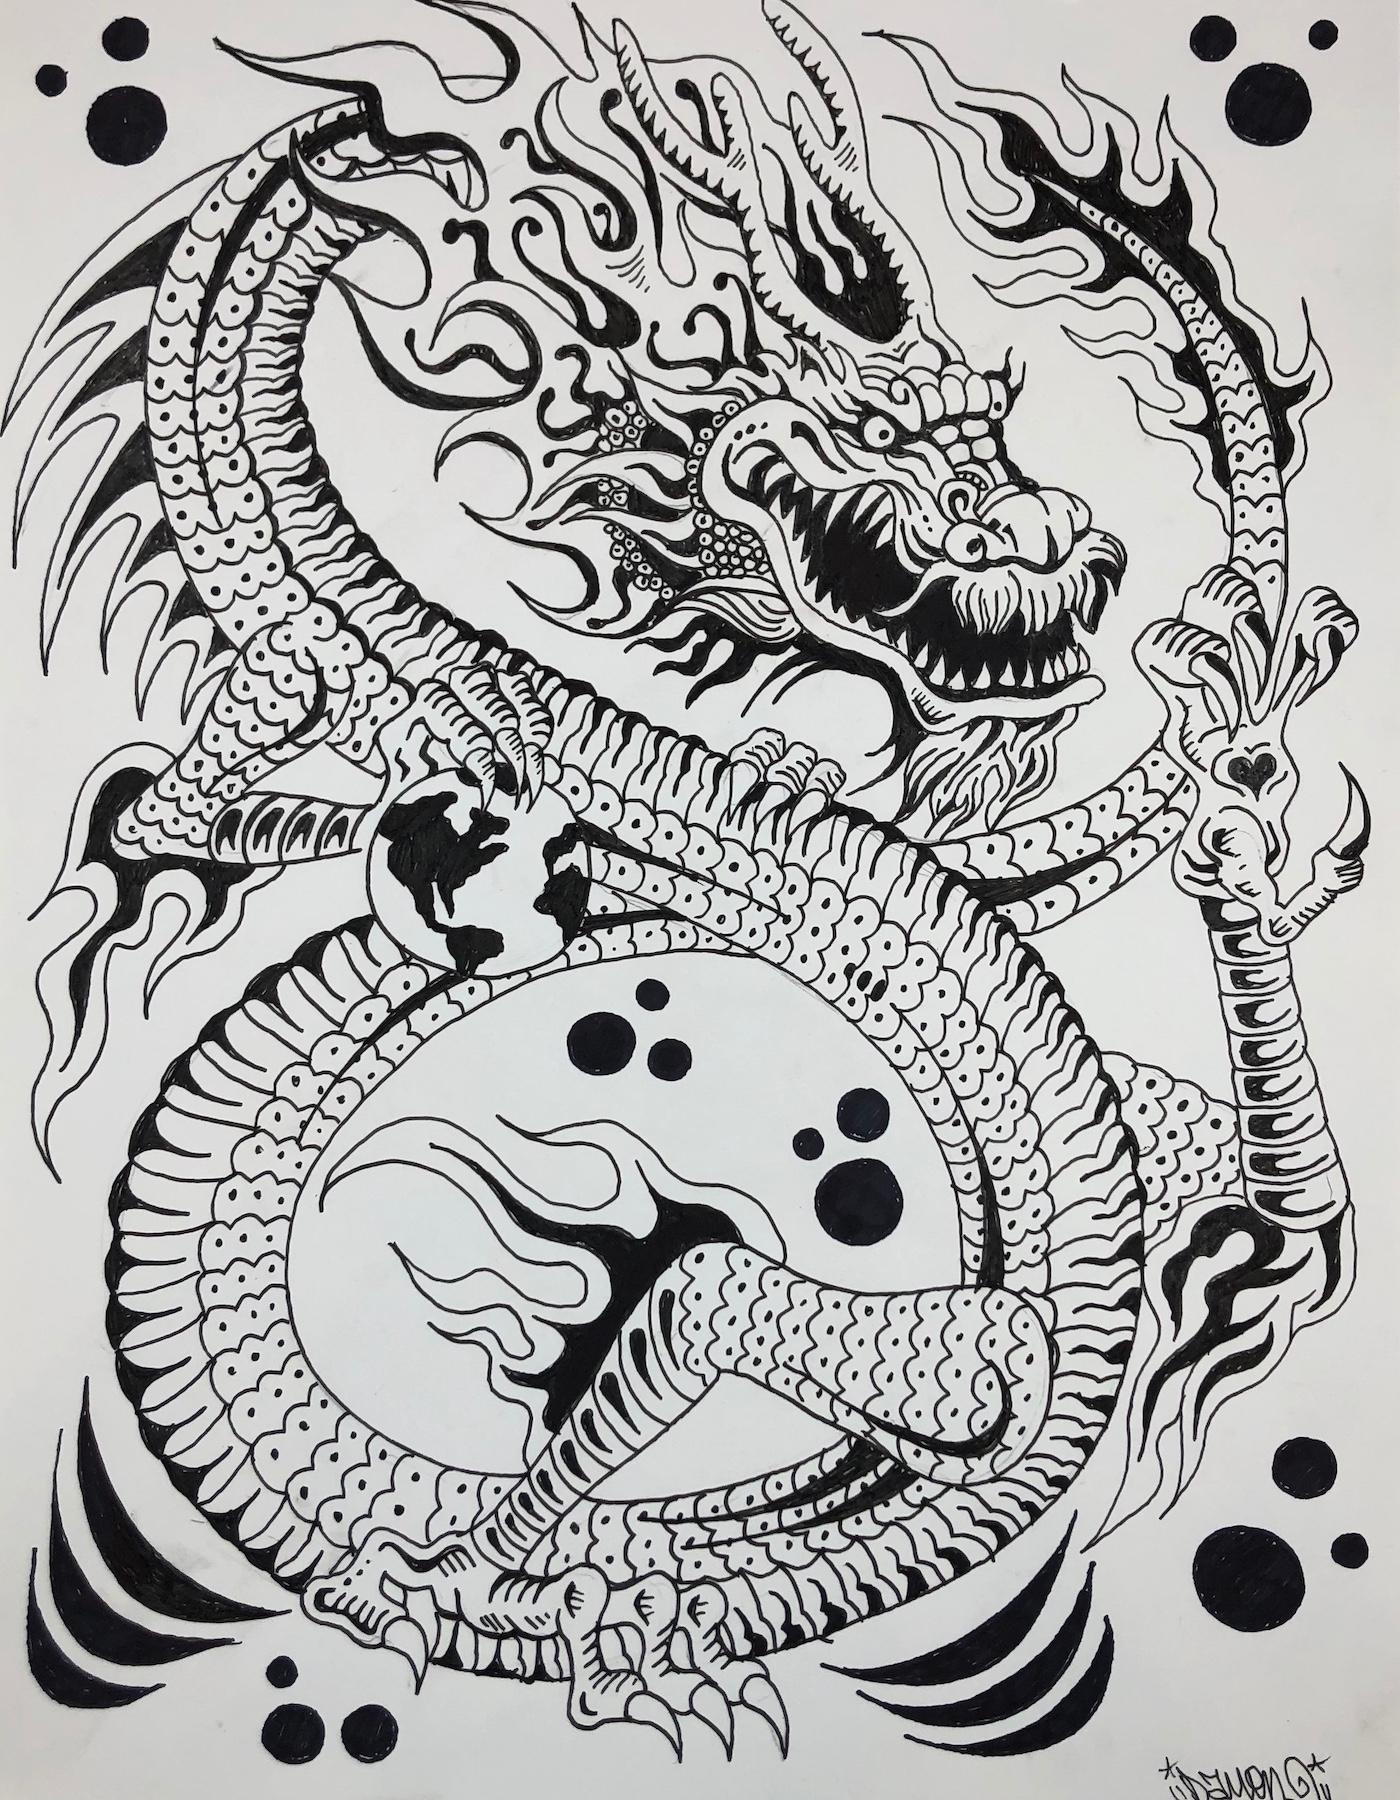 Dragon - Art by Damon Johnson